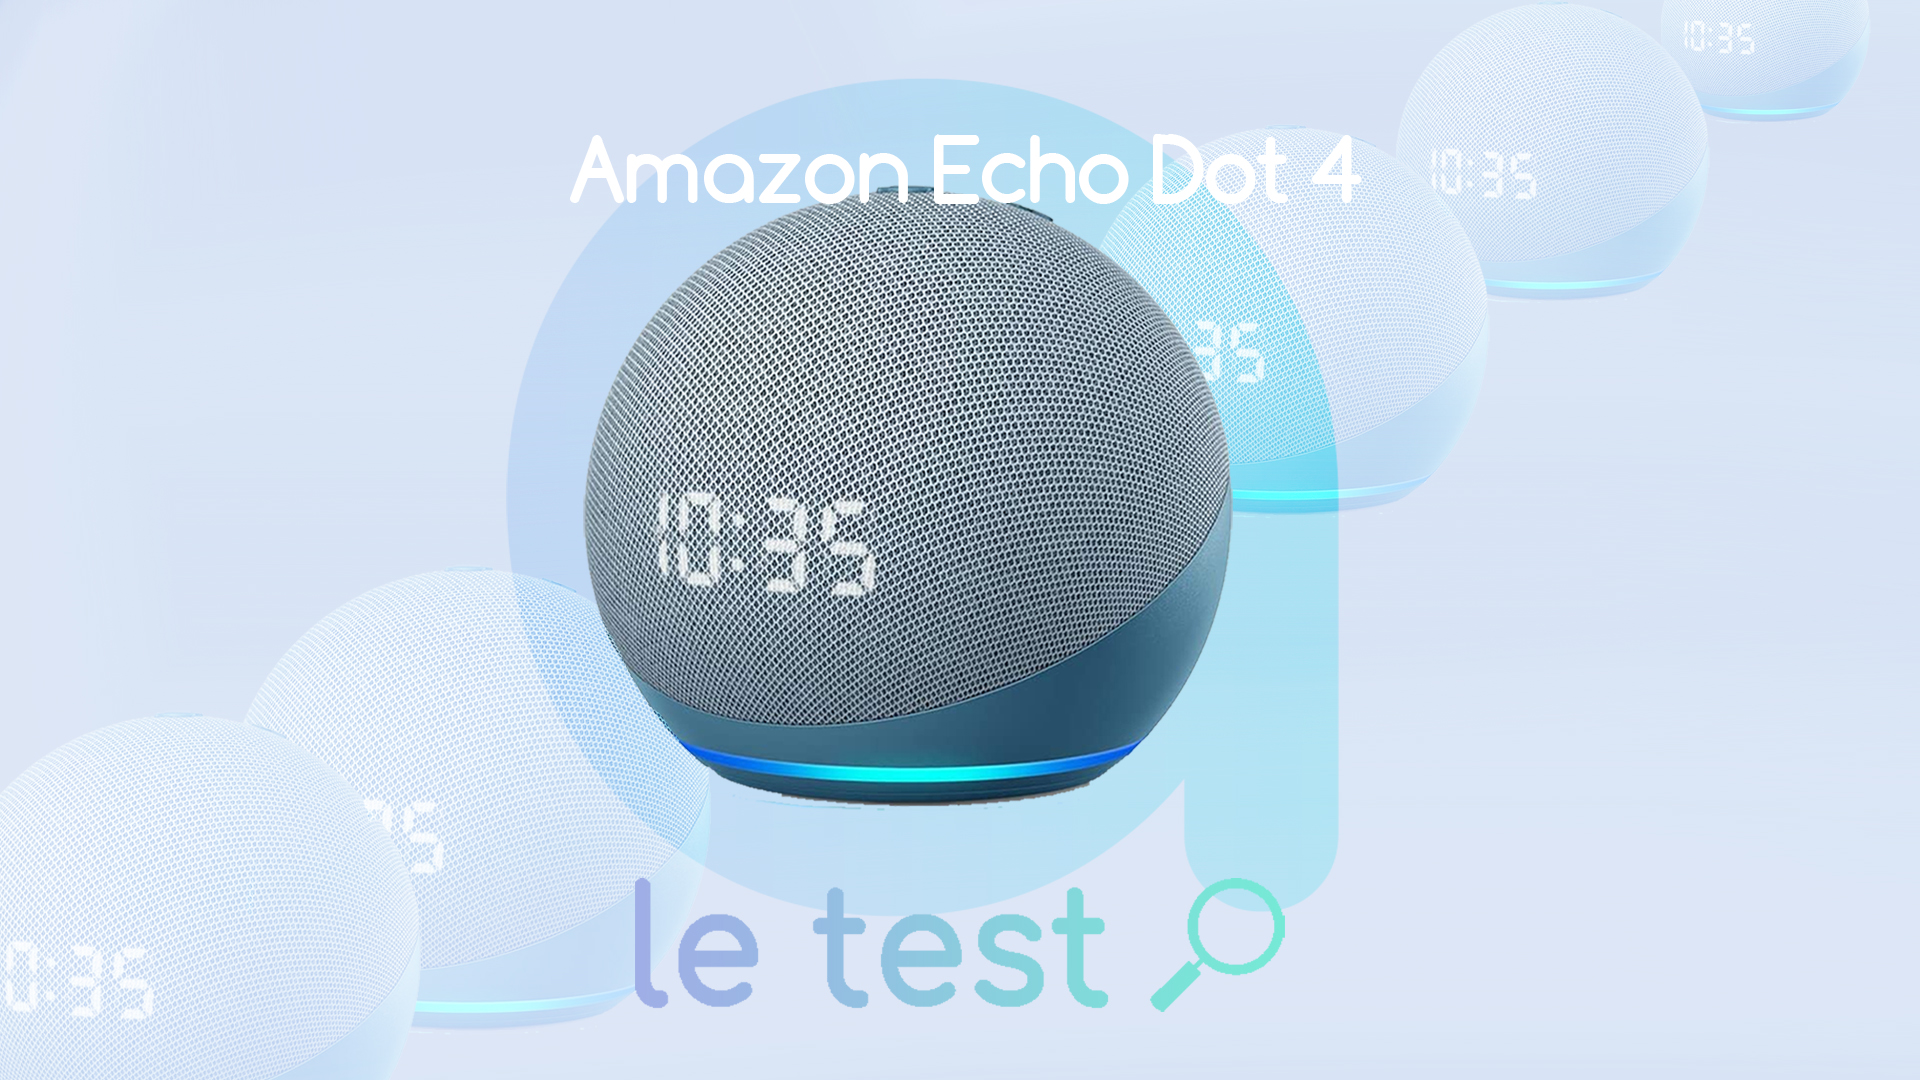 Nouvel Echo Dot (3ème génération), Enceinte connectée avec Alexa